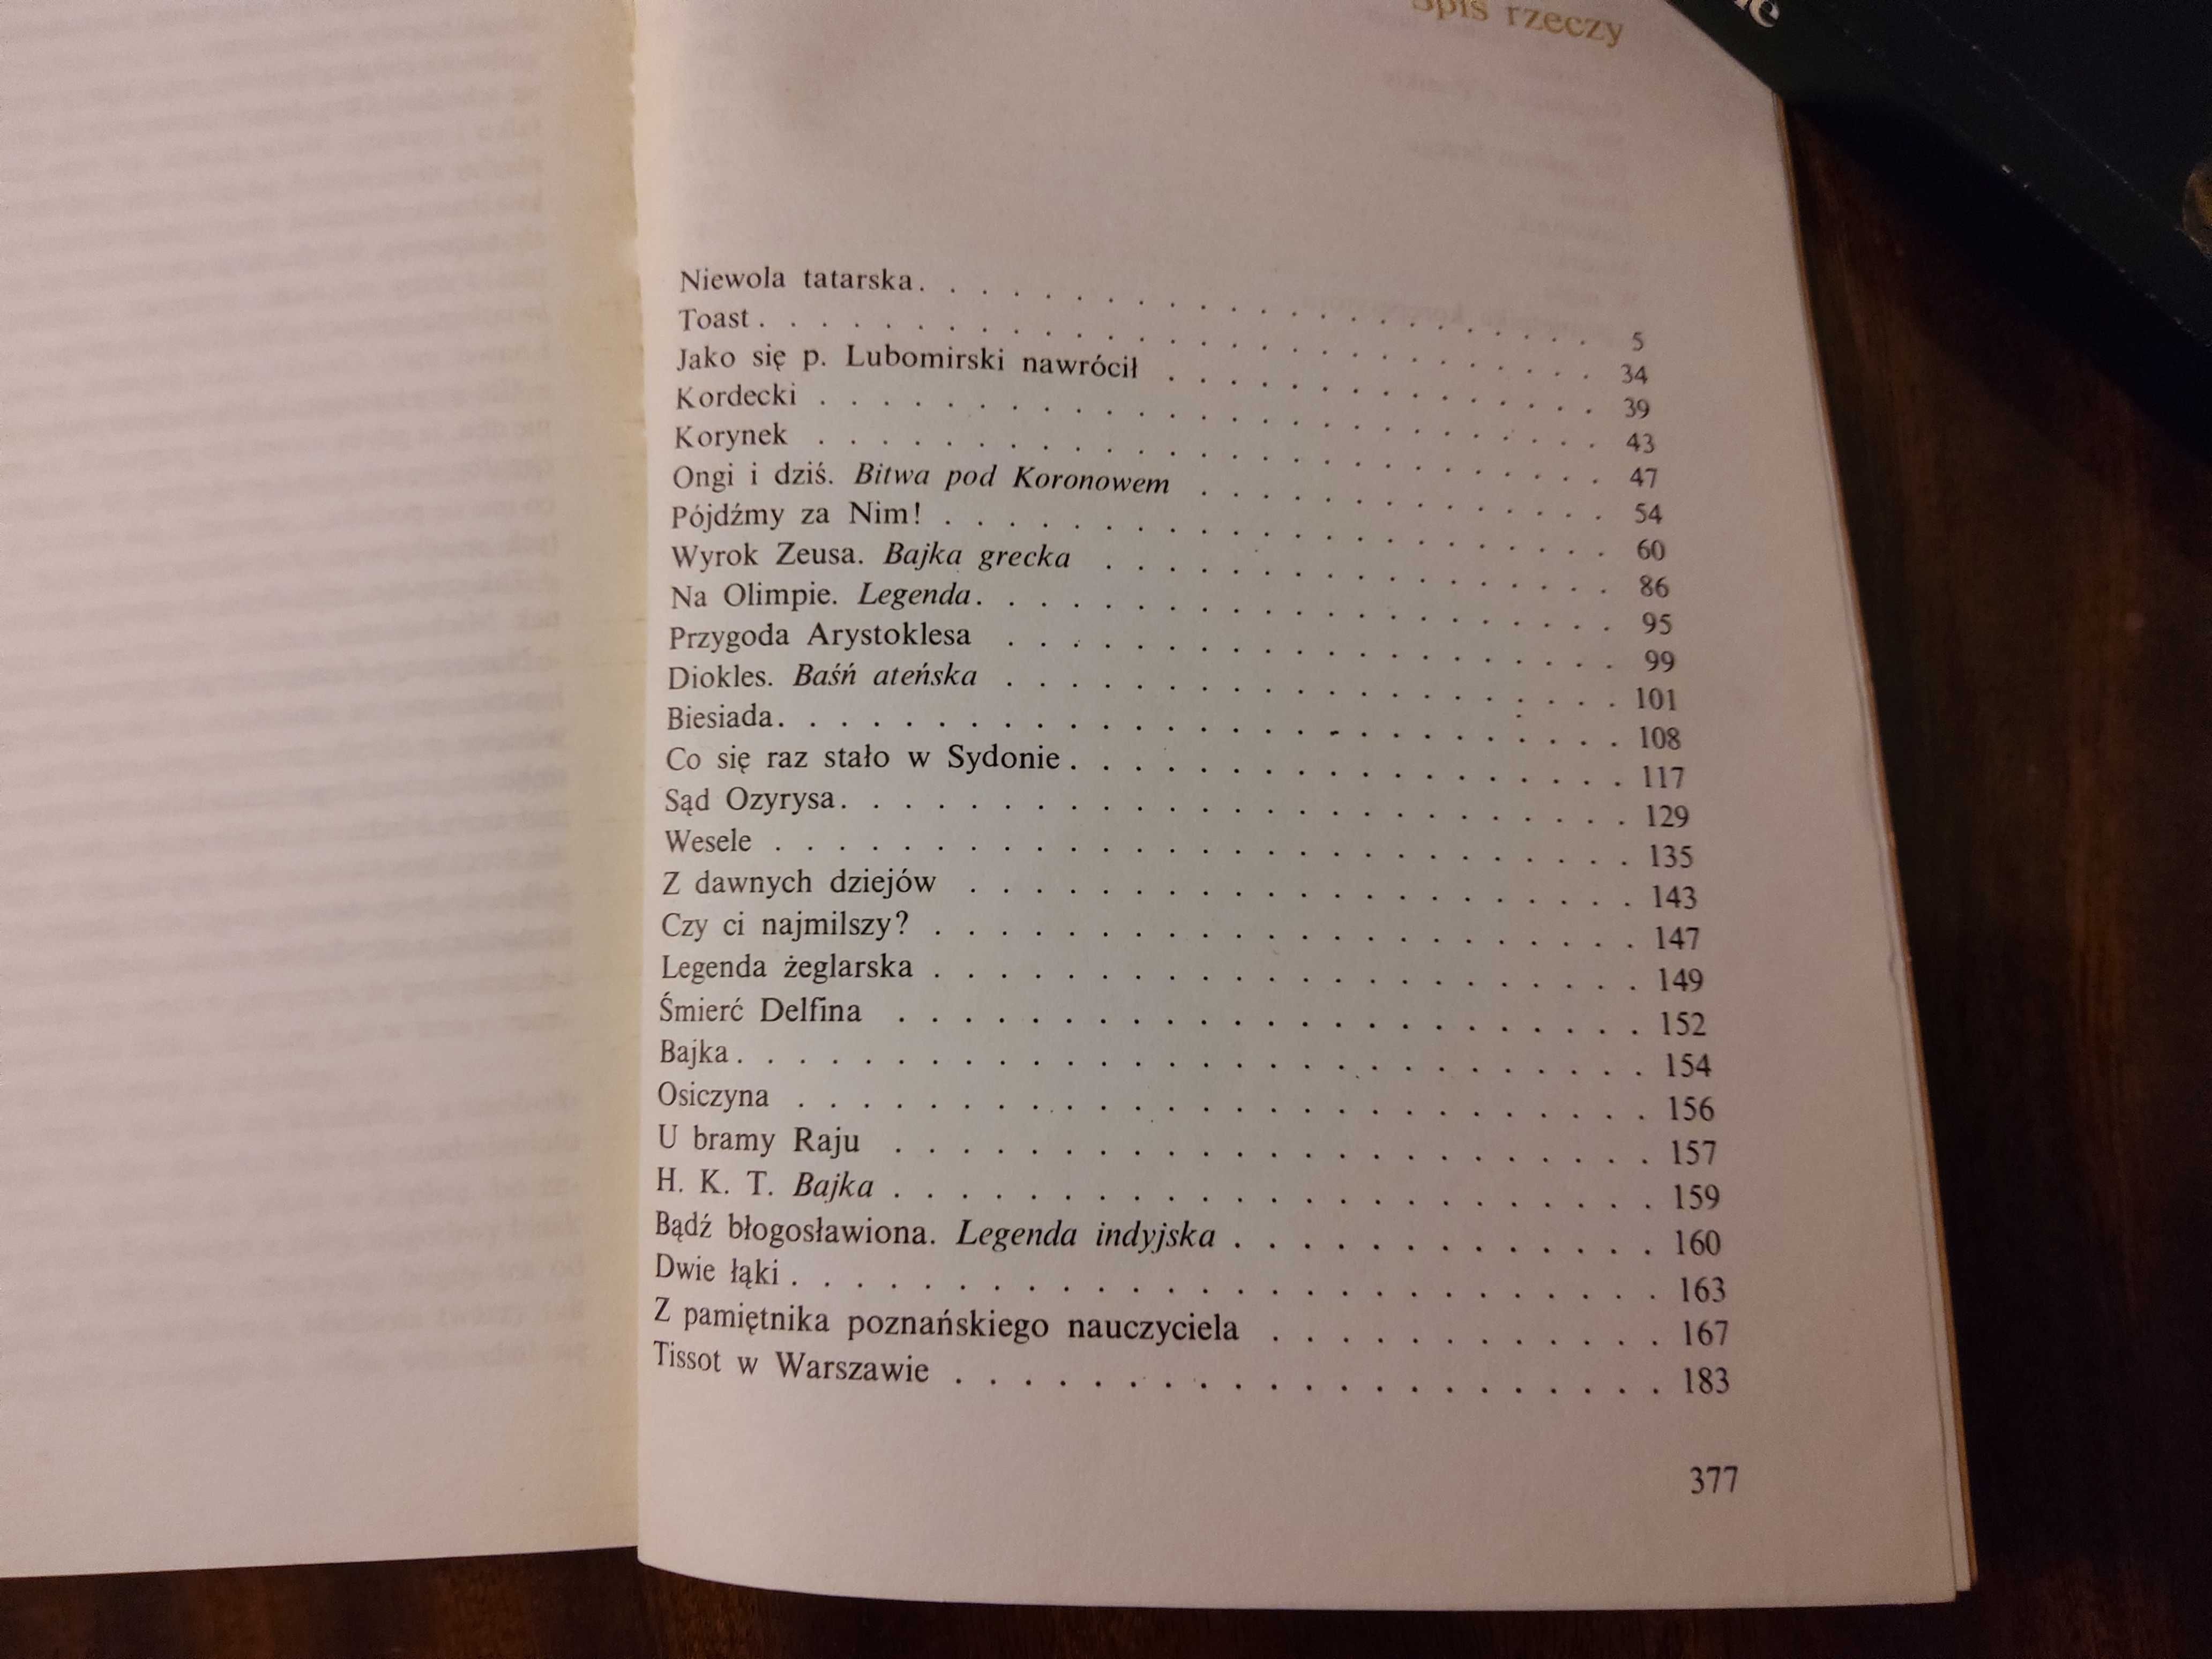 Henryk Sienkiewicz Pisma wybrane 17 tomów, PIW 1989